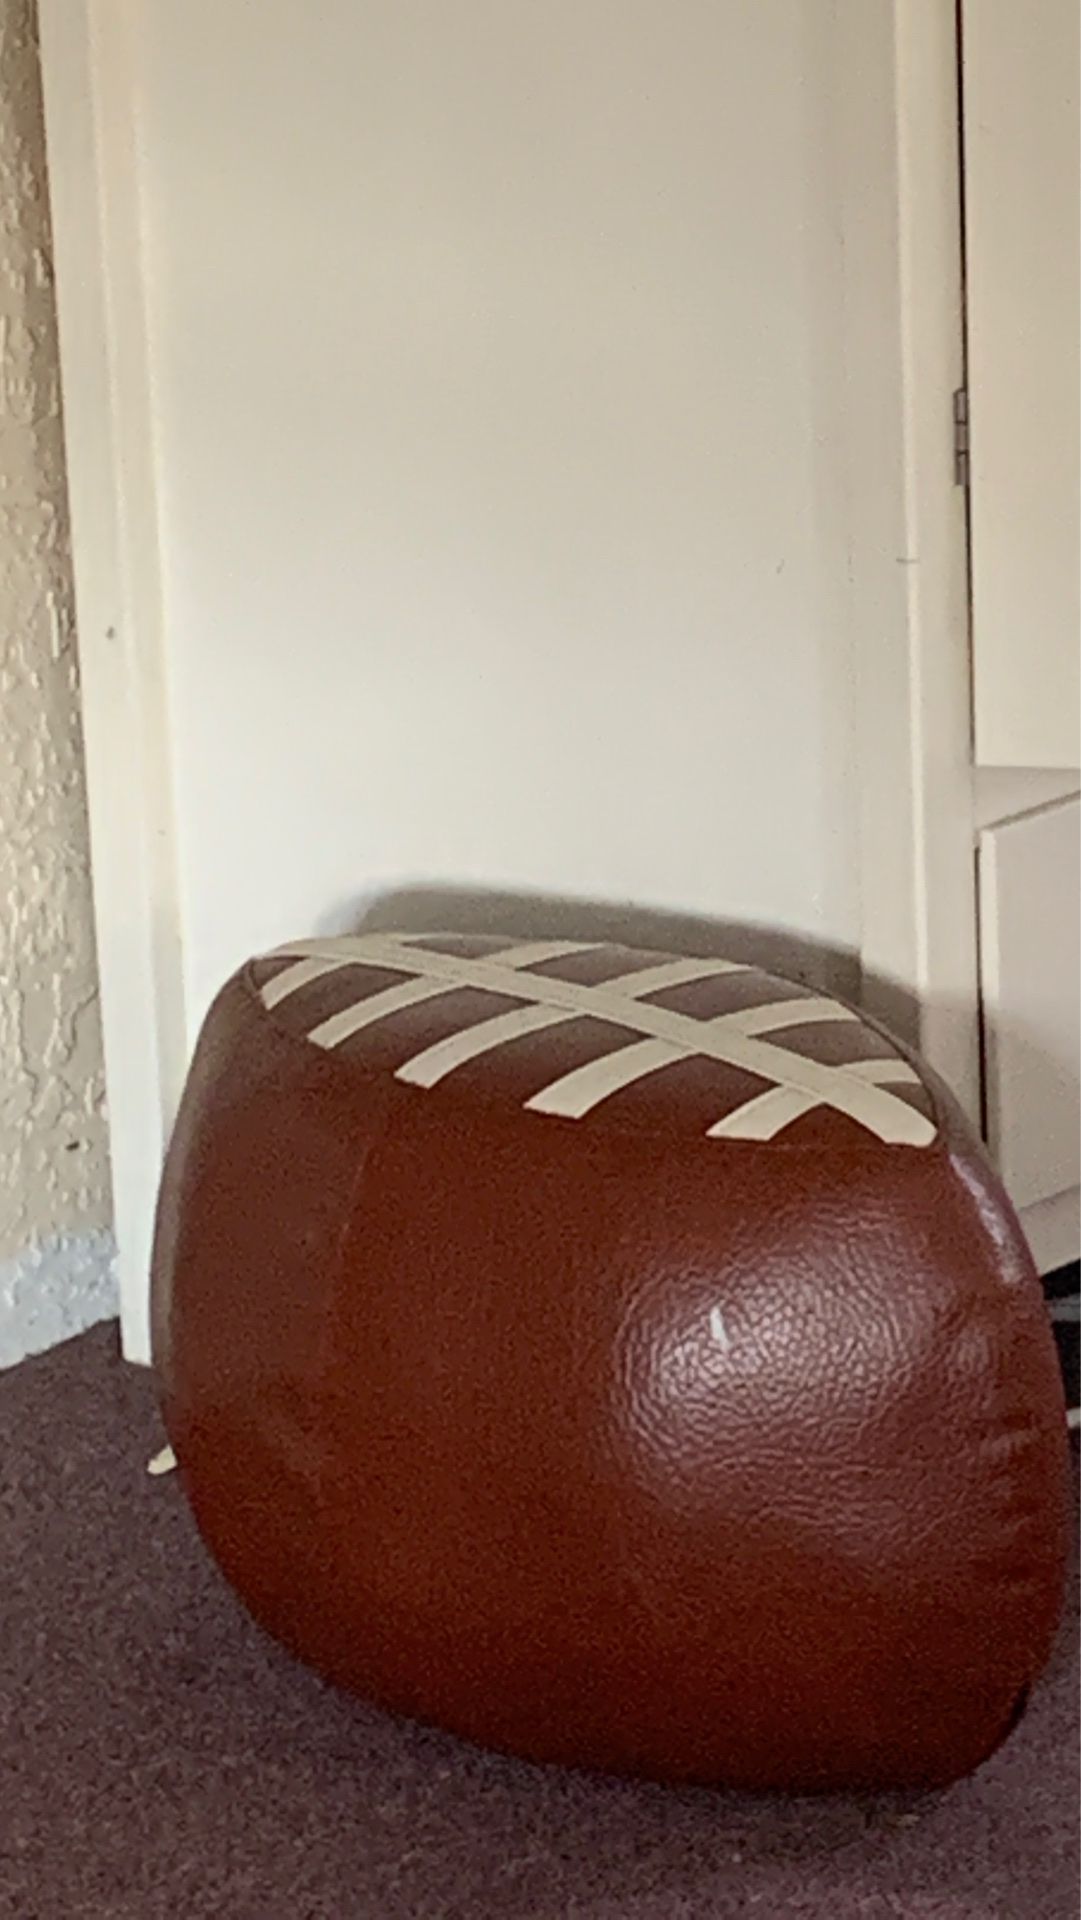 Football stool for kids